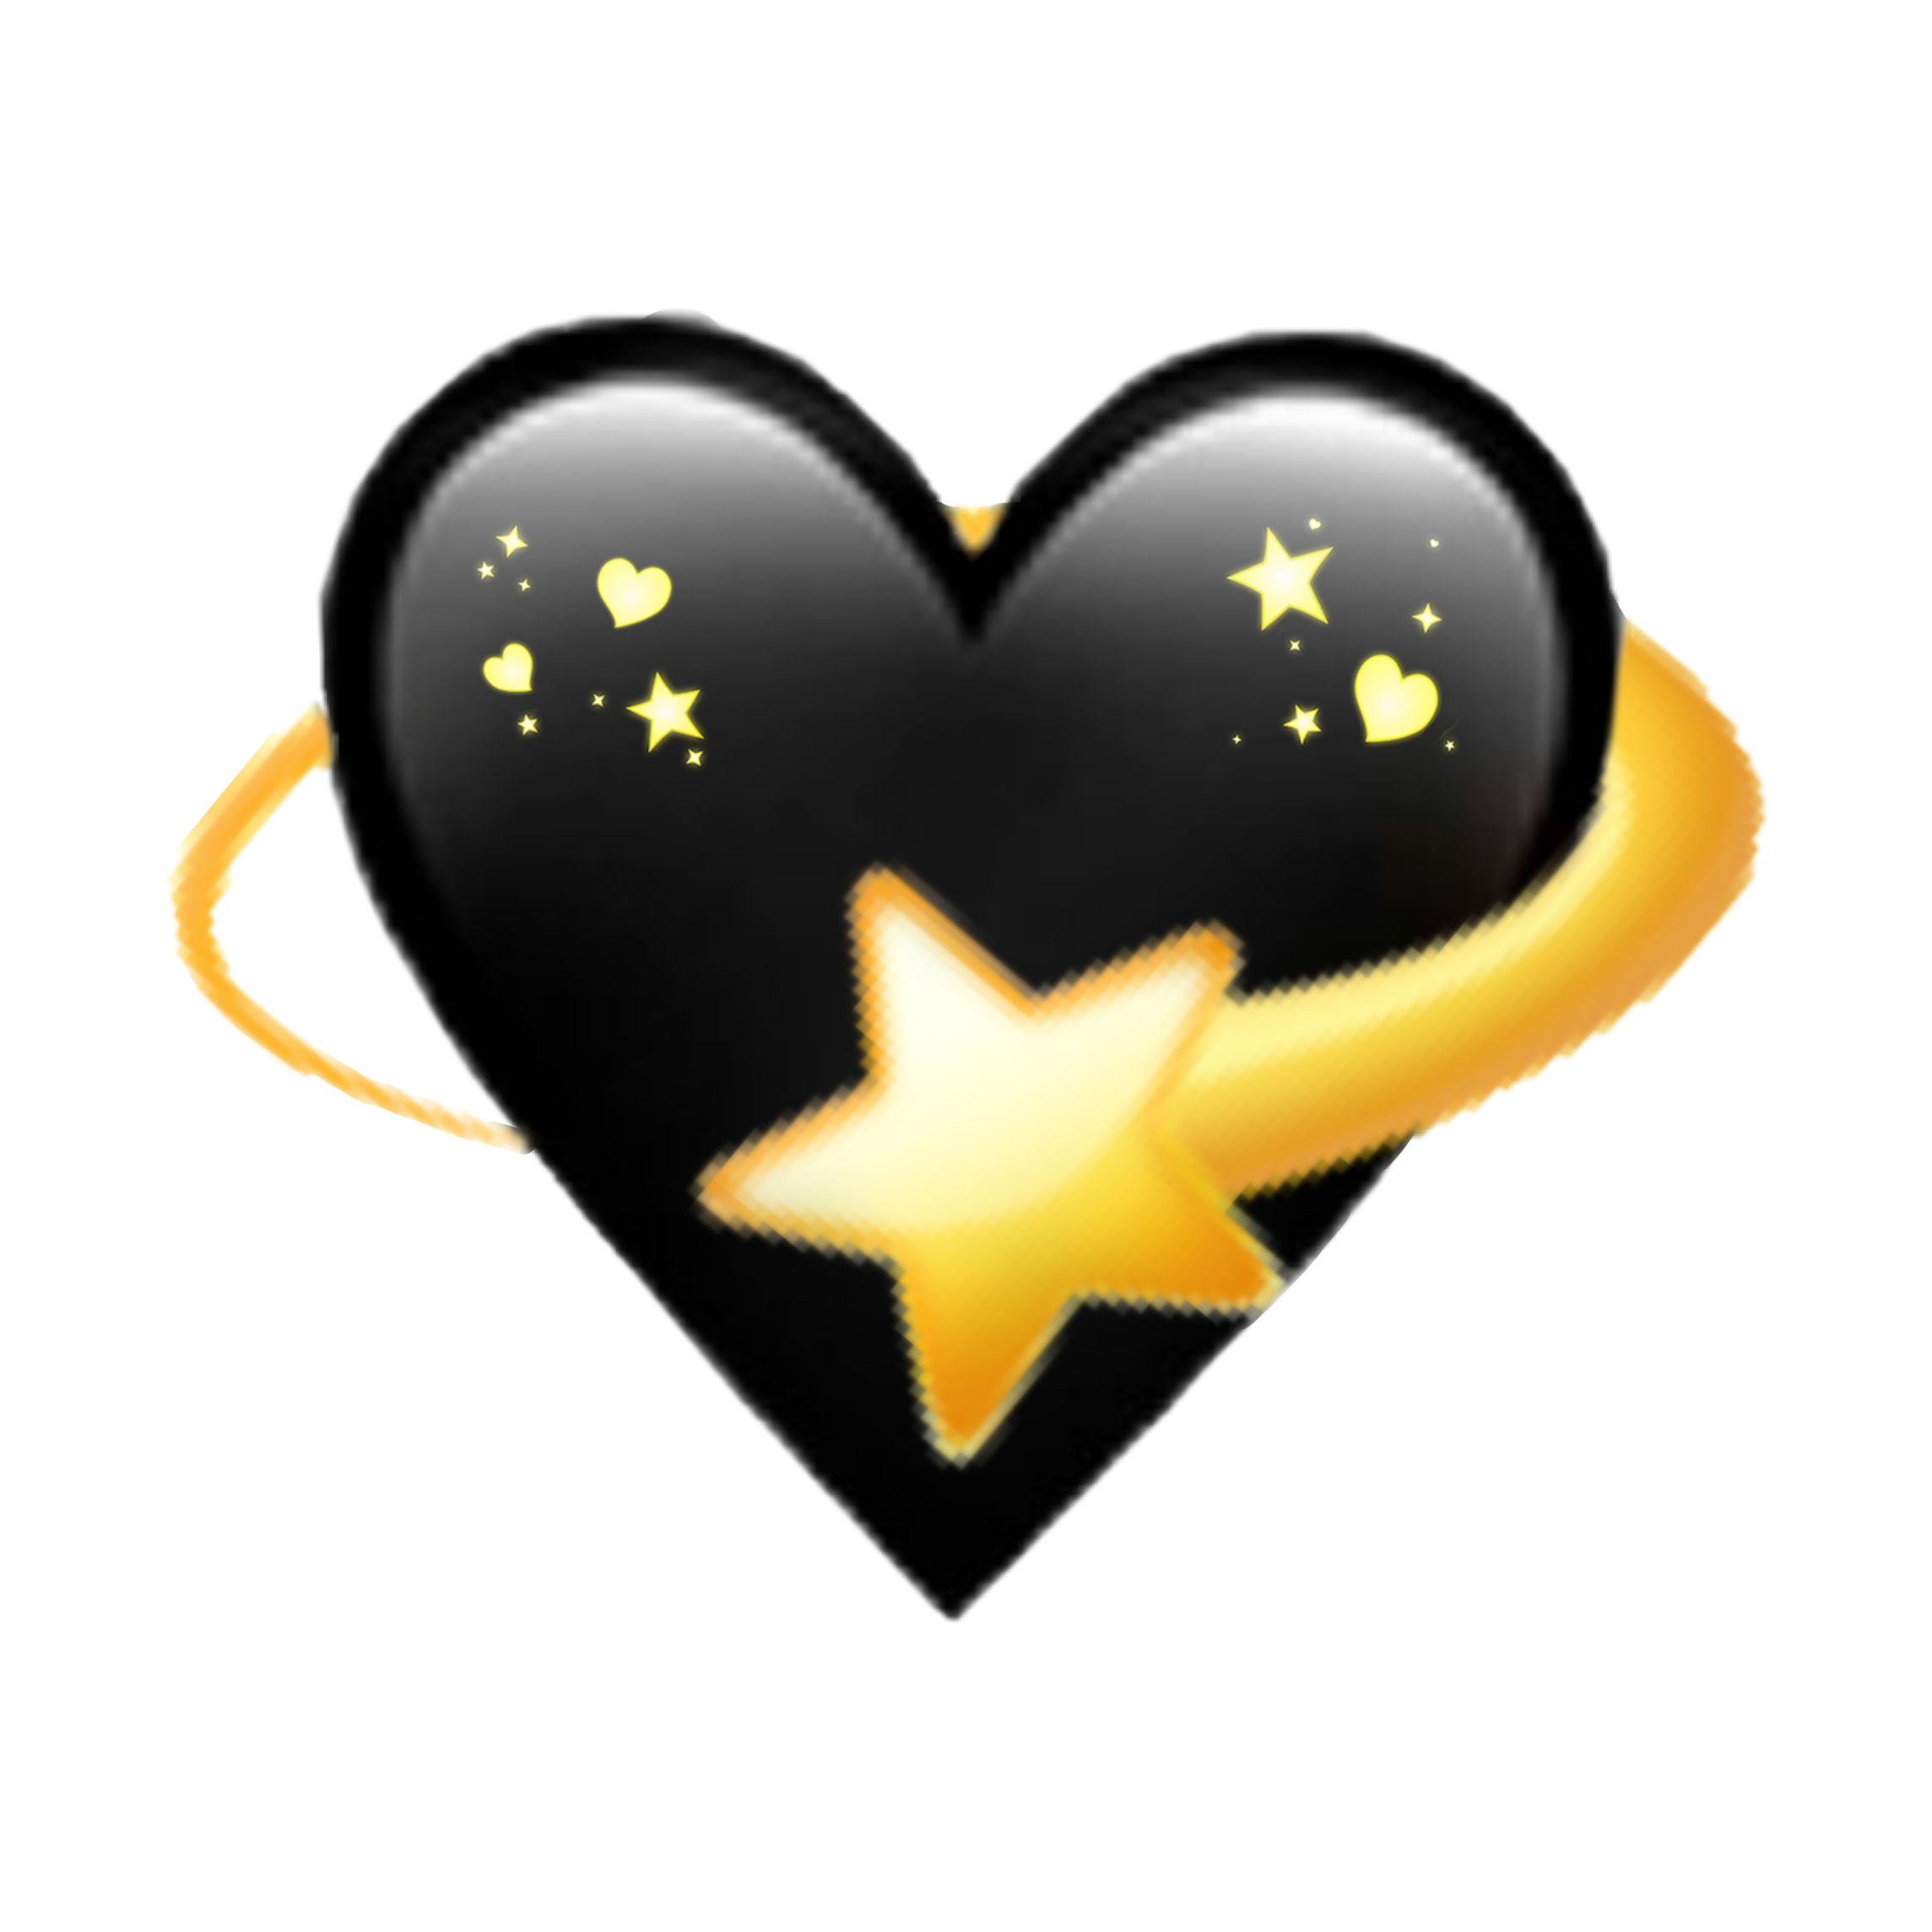 black heart star emoji remix - Sticker by Marras